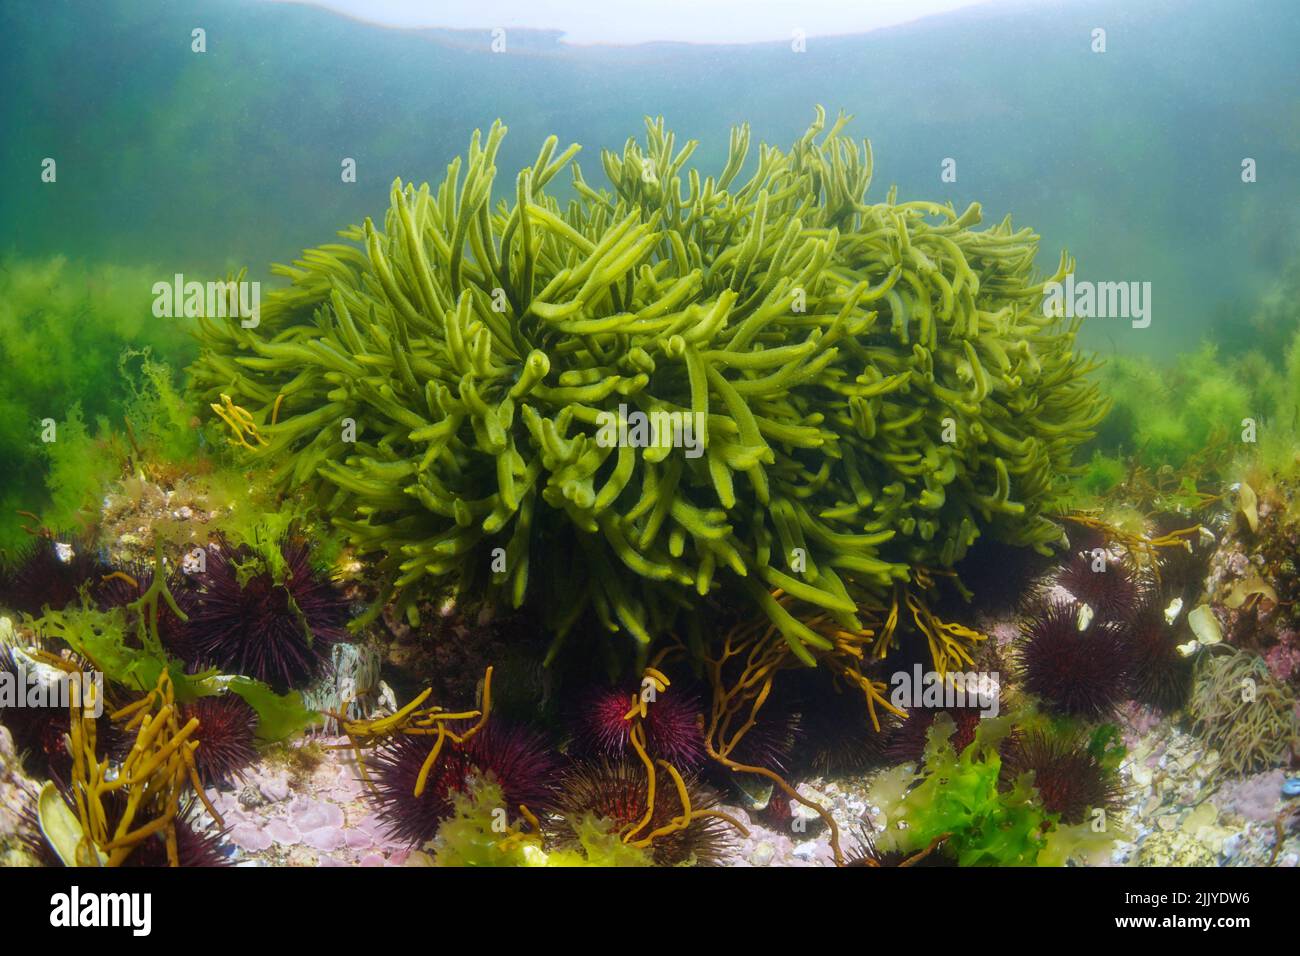 Corne de velours d'algue verte, algues Codium tomentosum sous l'océan, Atlantique est, Espagne, Galice Banque D'Images